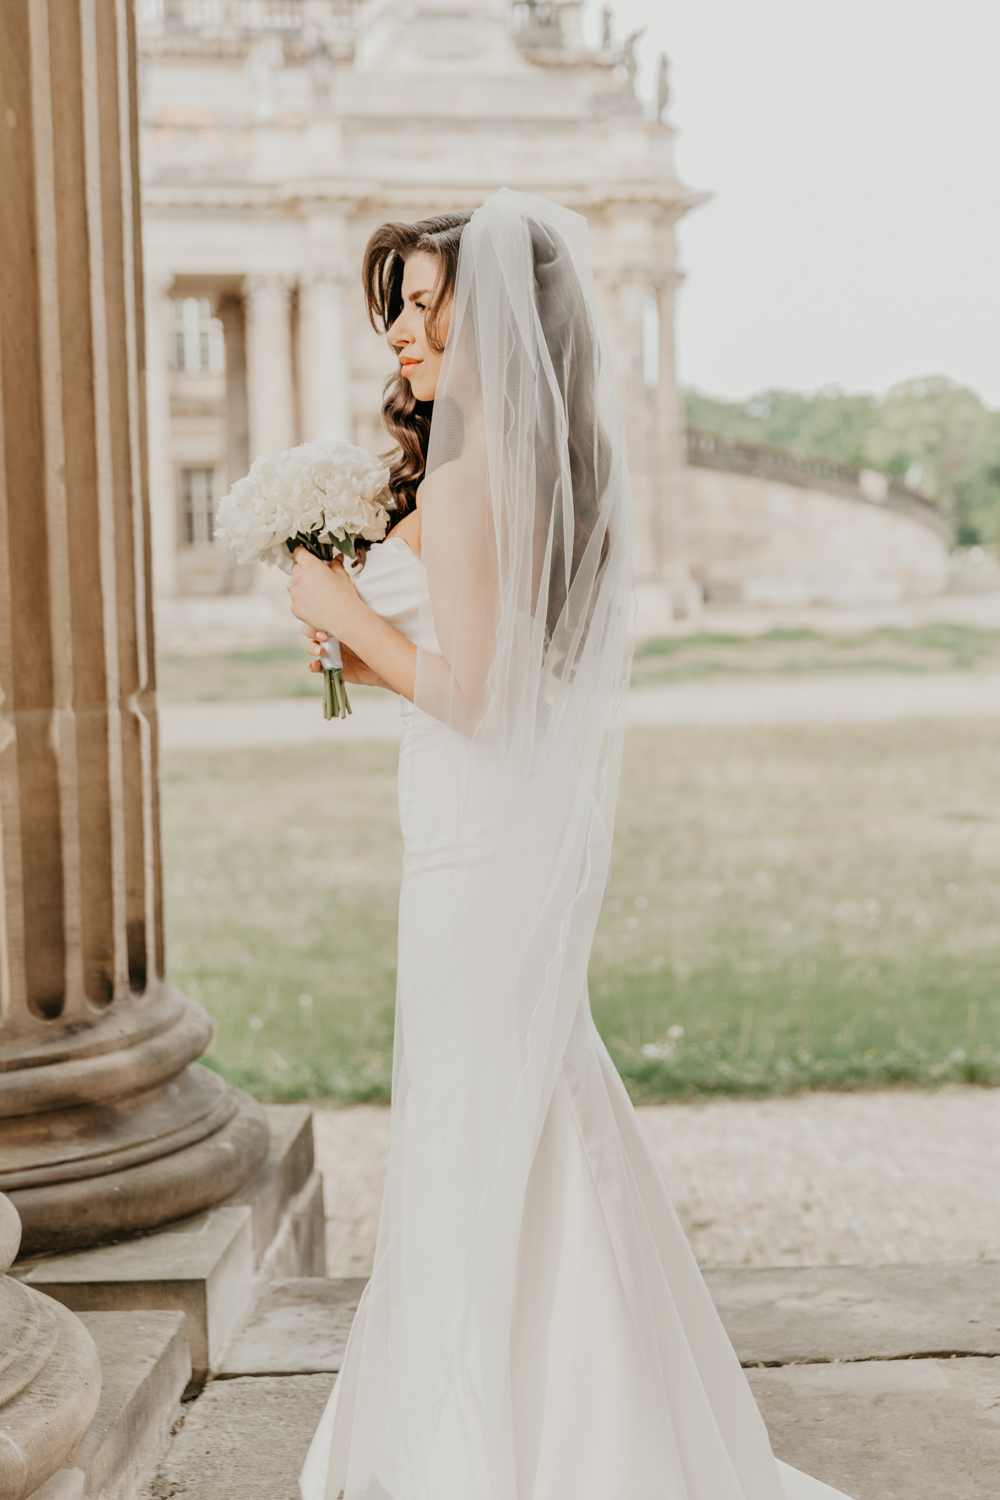 Hier wird die Braut alleine, im Rahmen des Brautpaarshootings fotografiert. Das Shooting findet am Neuen Palais in Potsdam statt. Die Braut steht alleine im Bogen vor einer Sandsteinsäule und hält ihren Brautstrauß in den Händen. Teil der ganztägigen Hochzeitsreportage.